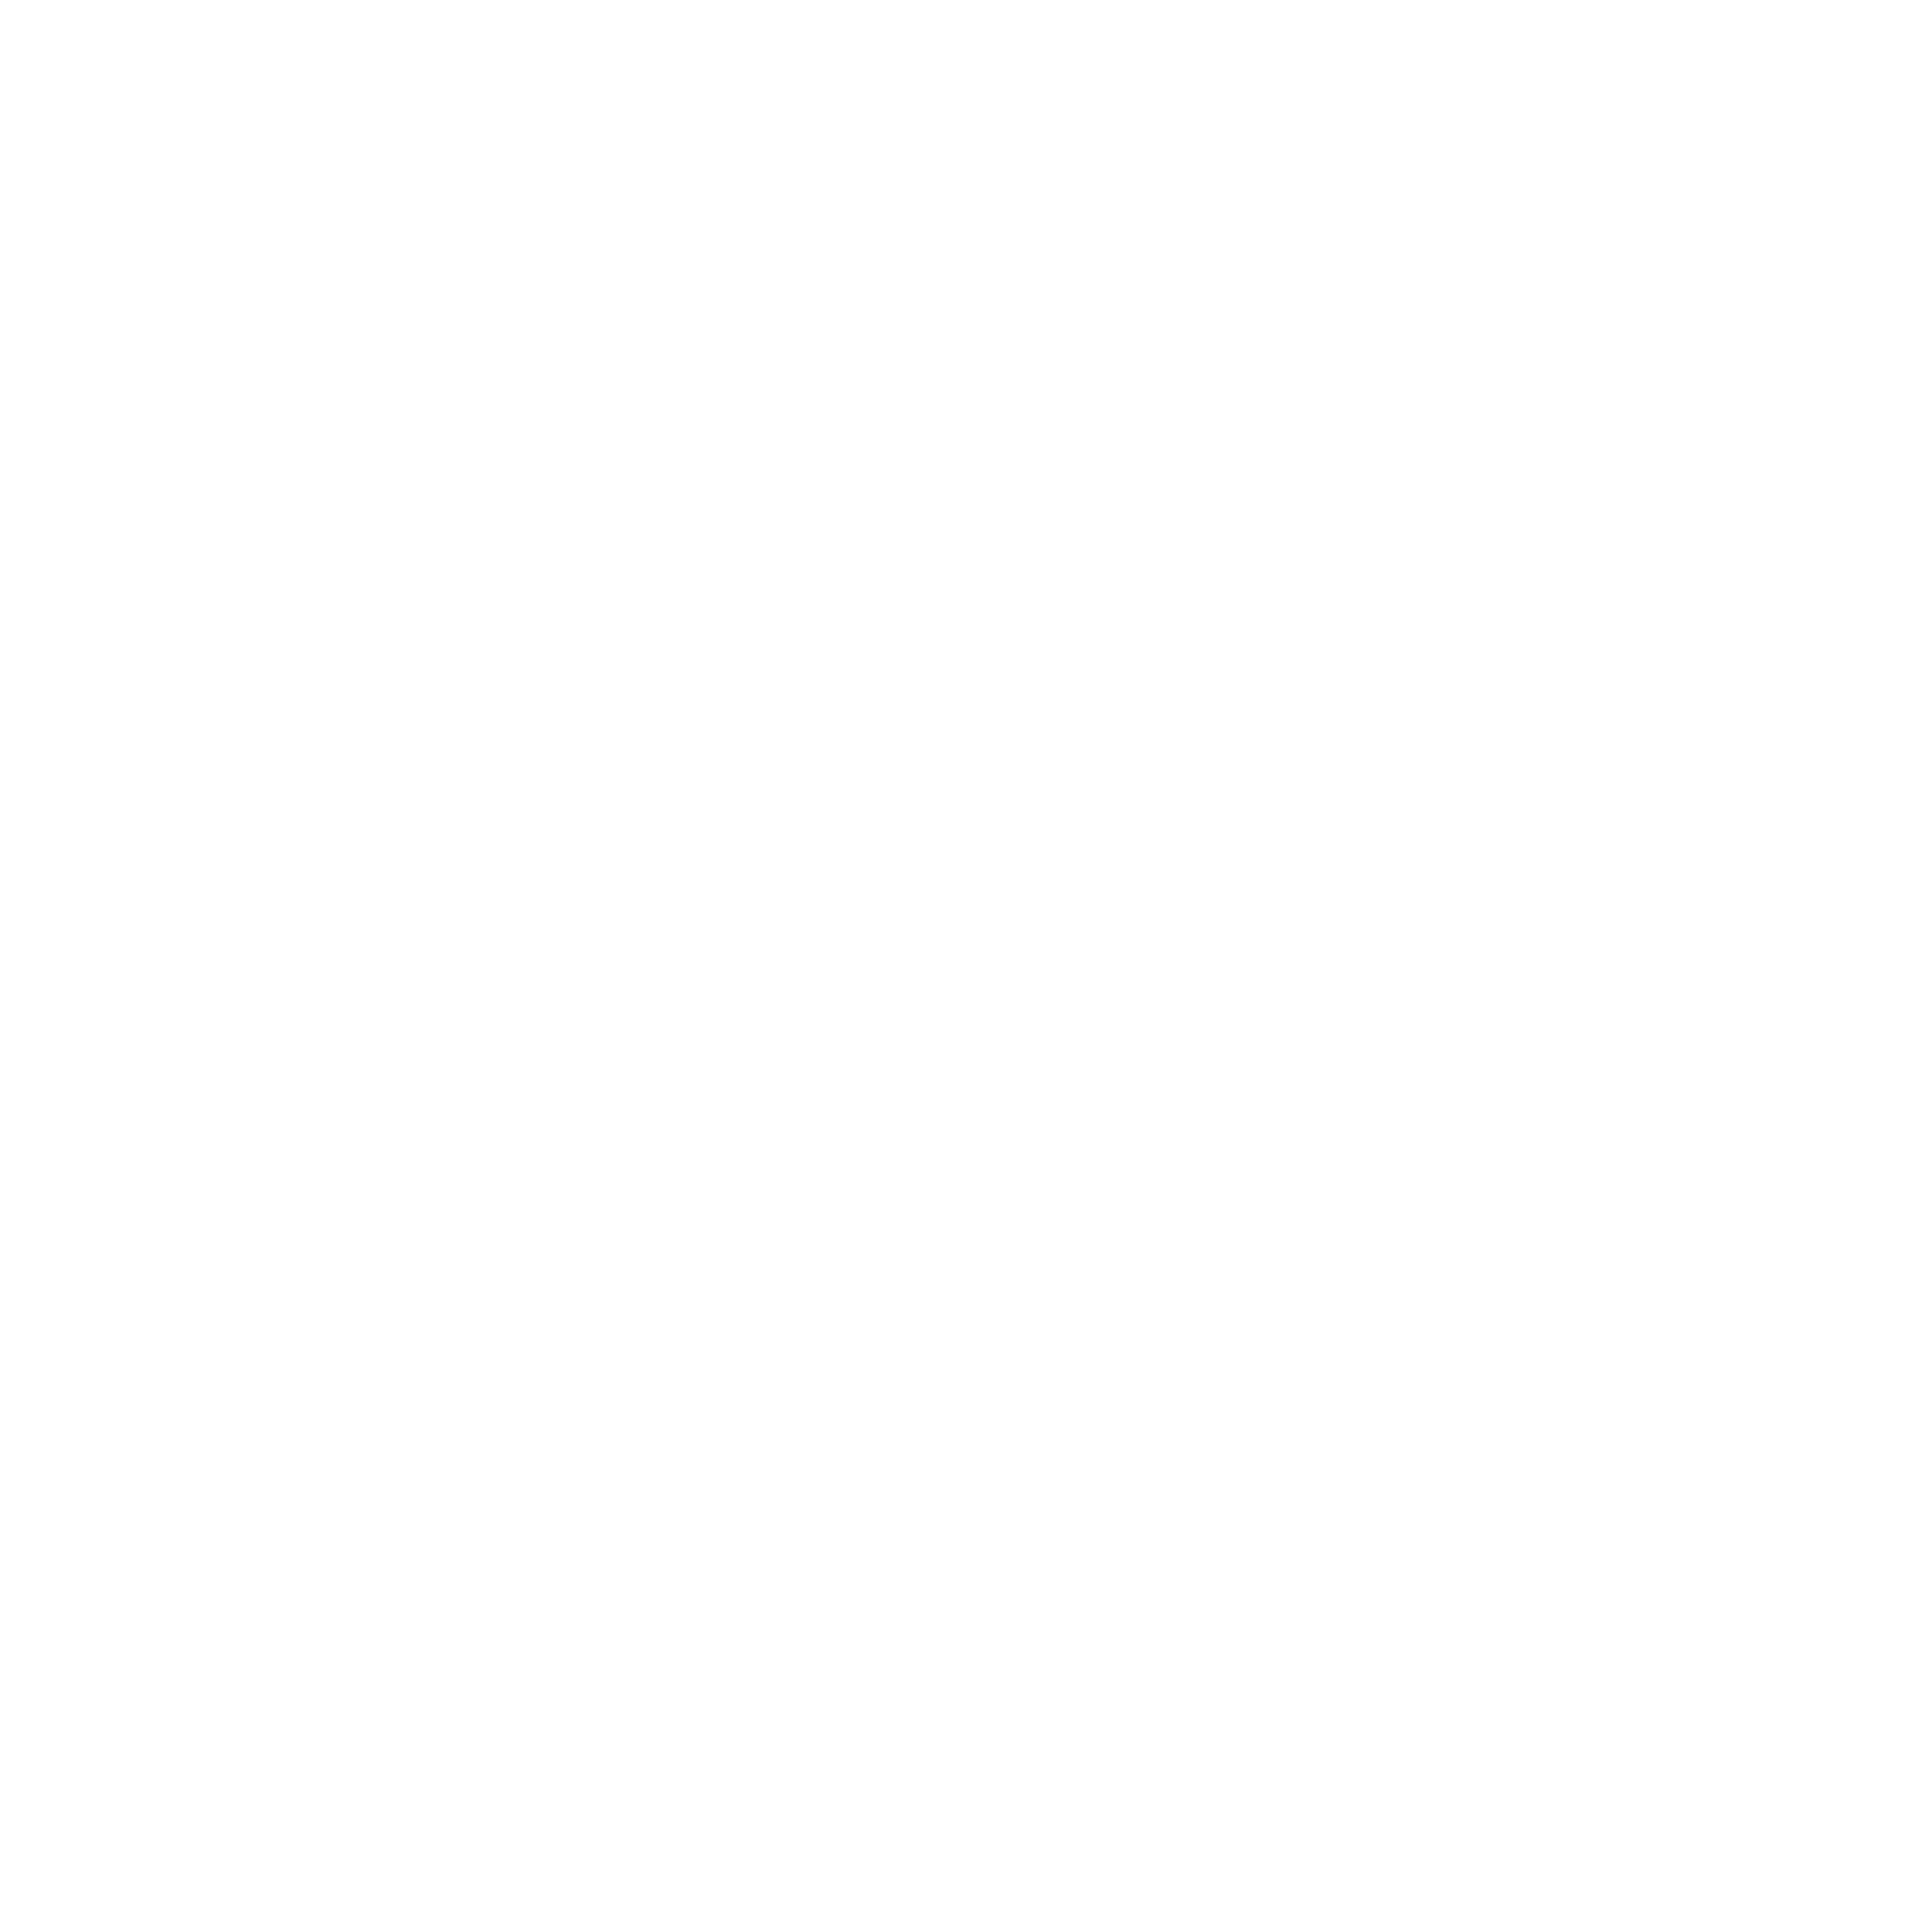 incoach logo